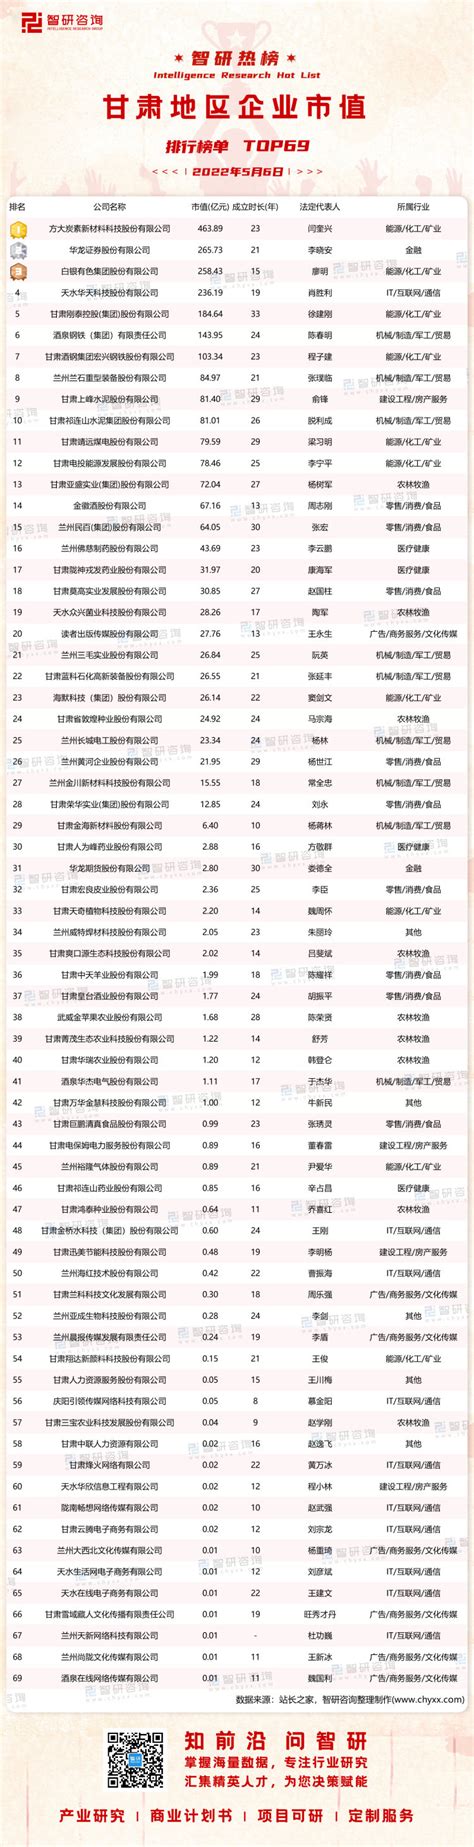 2020年甘肃省开发区建设发展规划及开发区名单汇总一览（附图表）-中商情报网